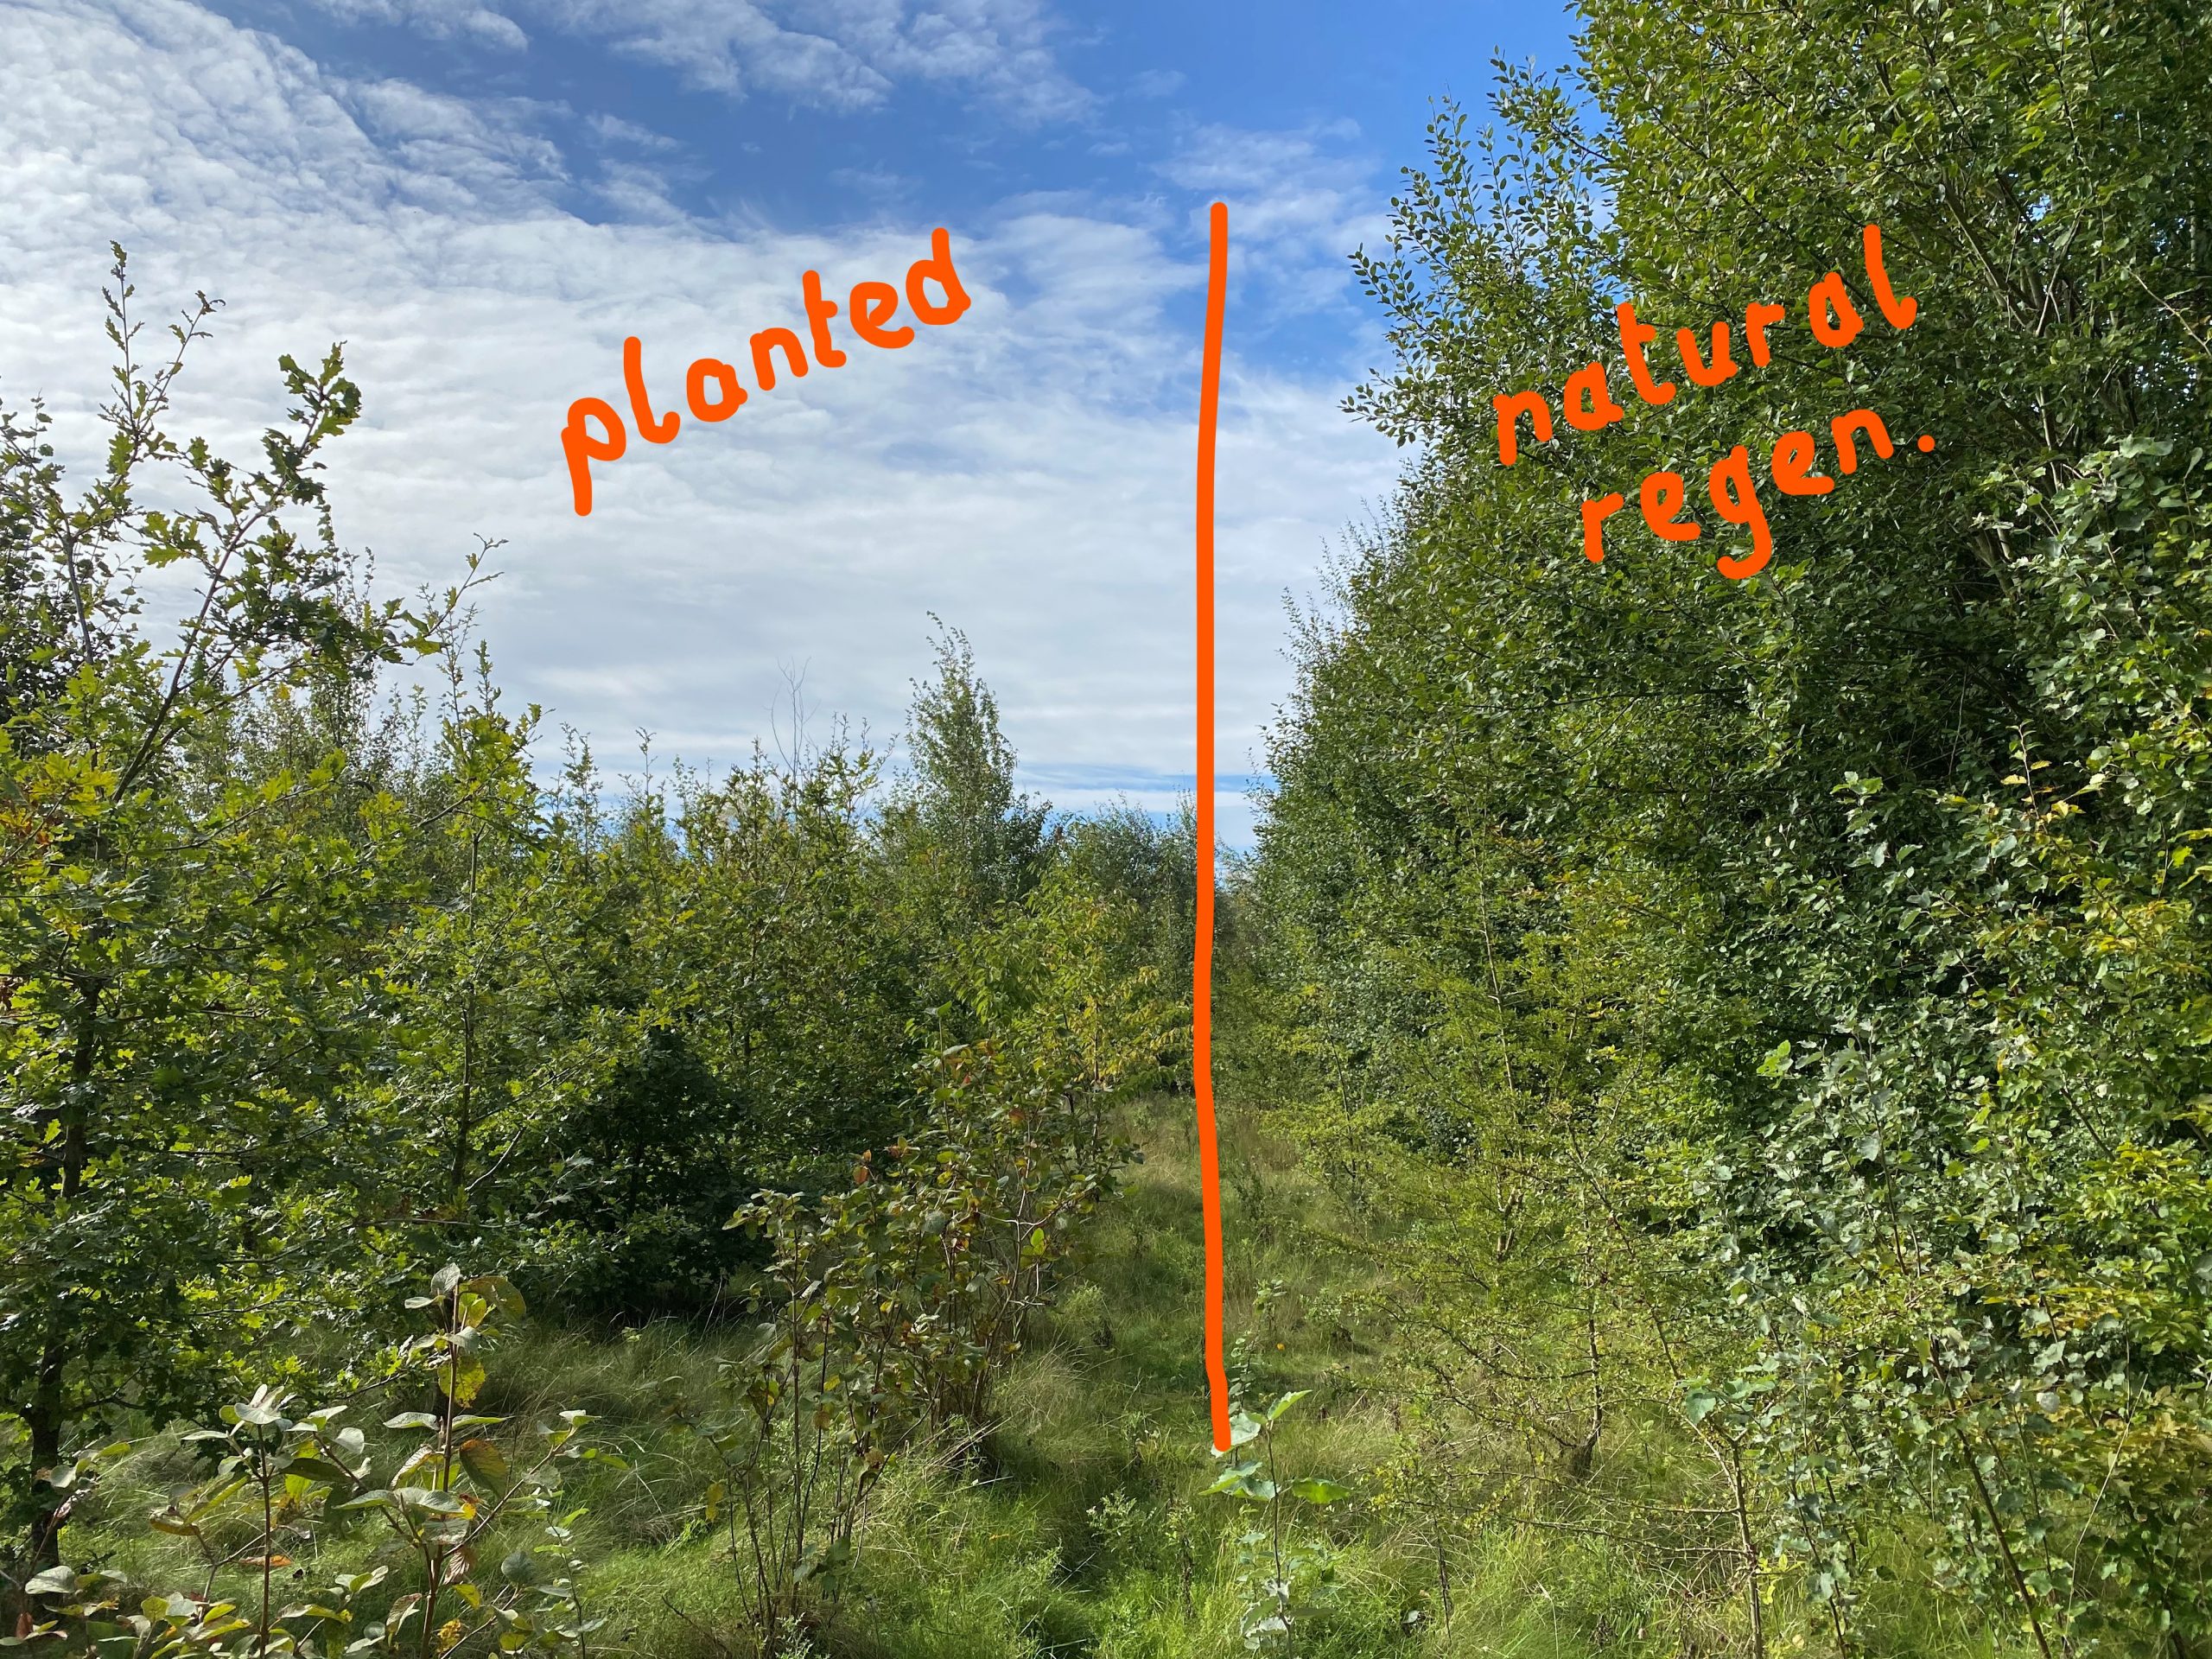 planted v natural woodland regeneration